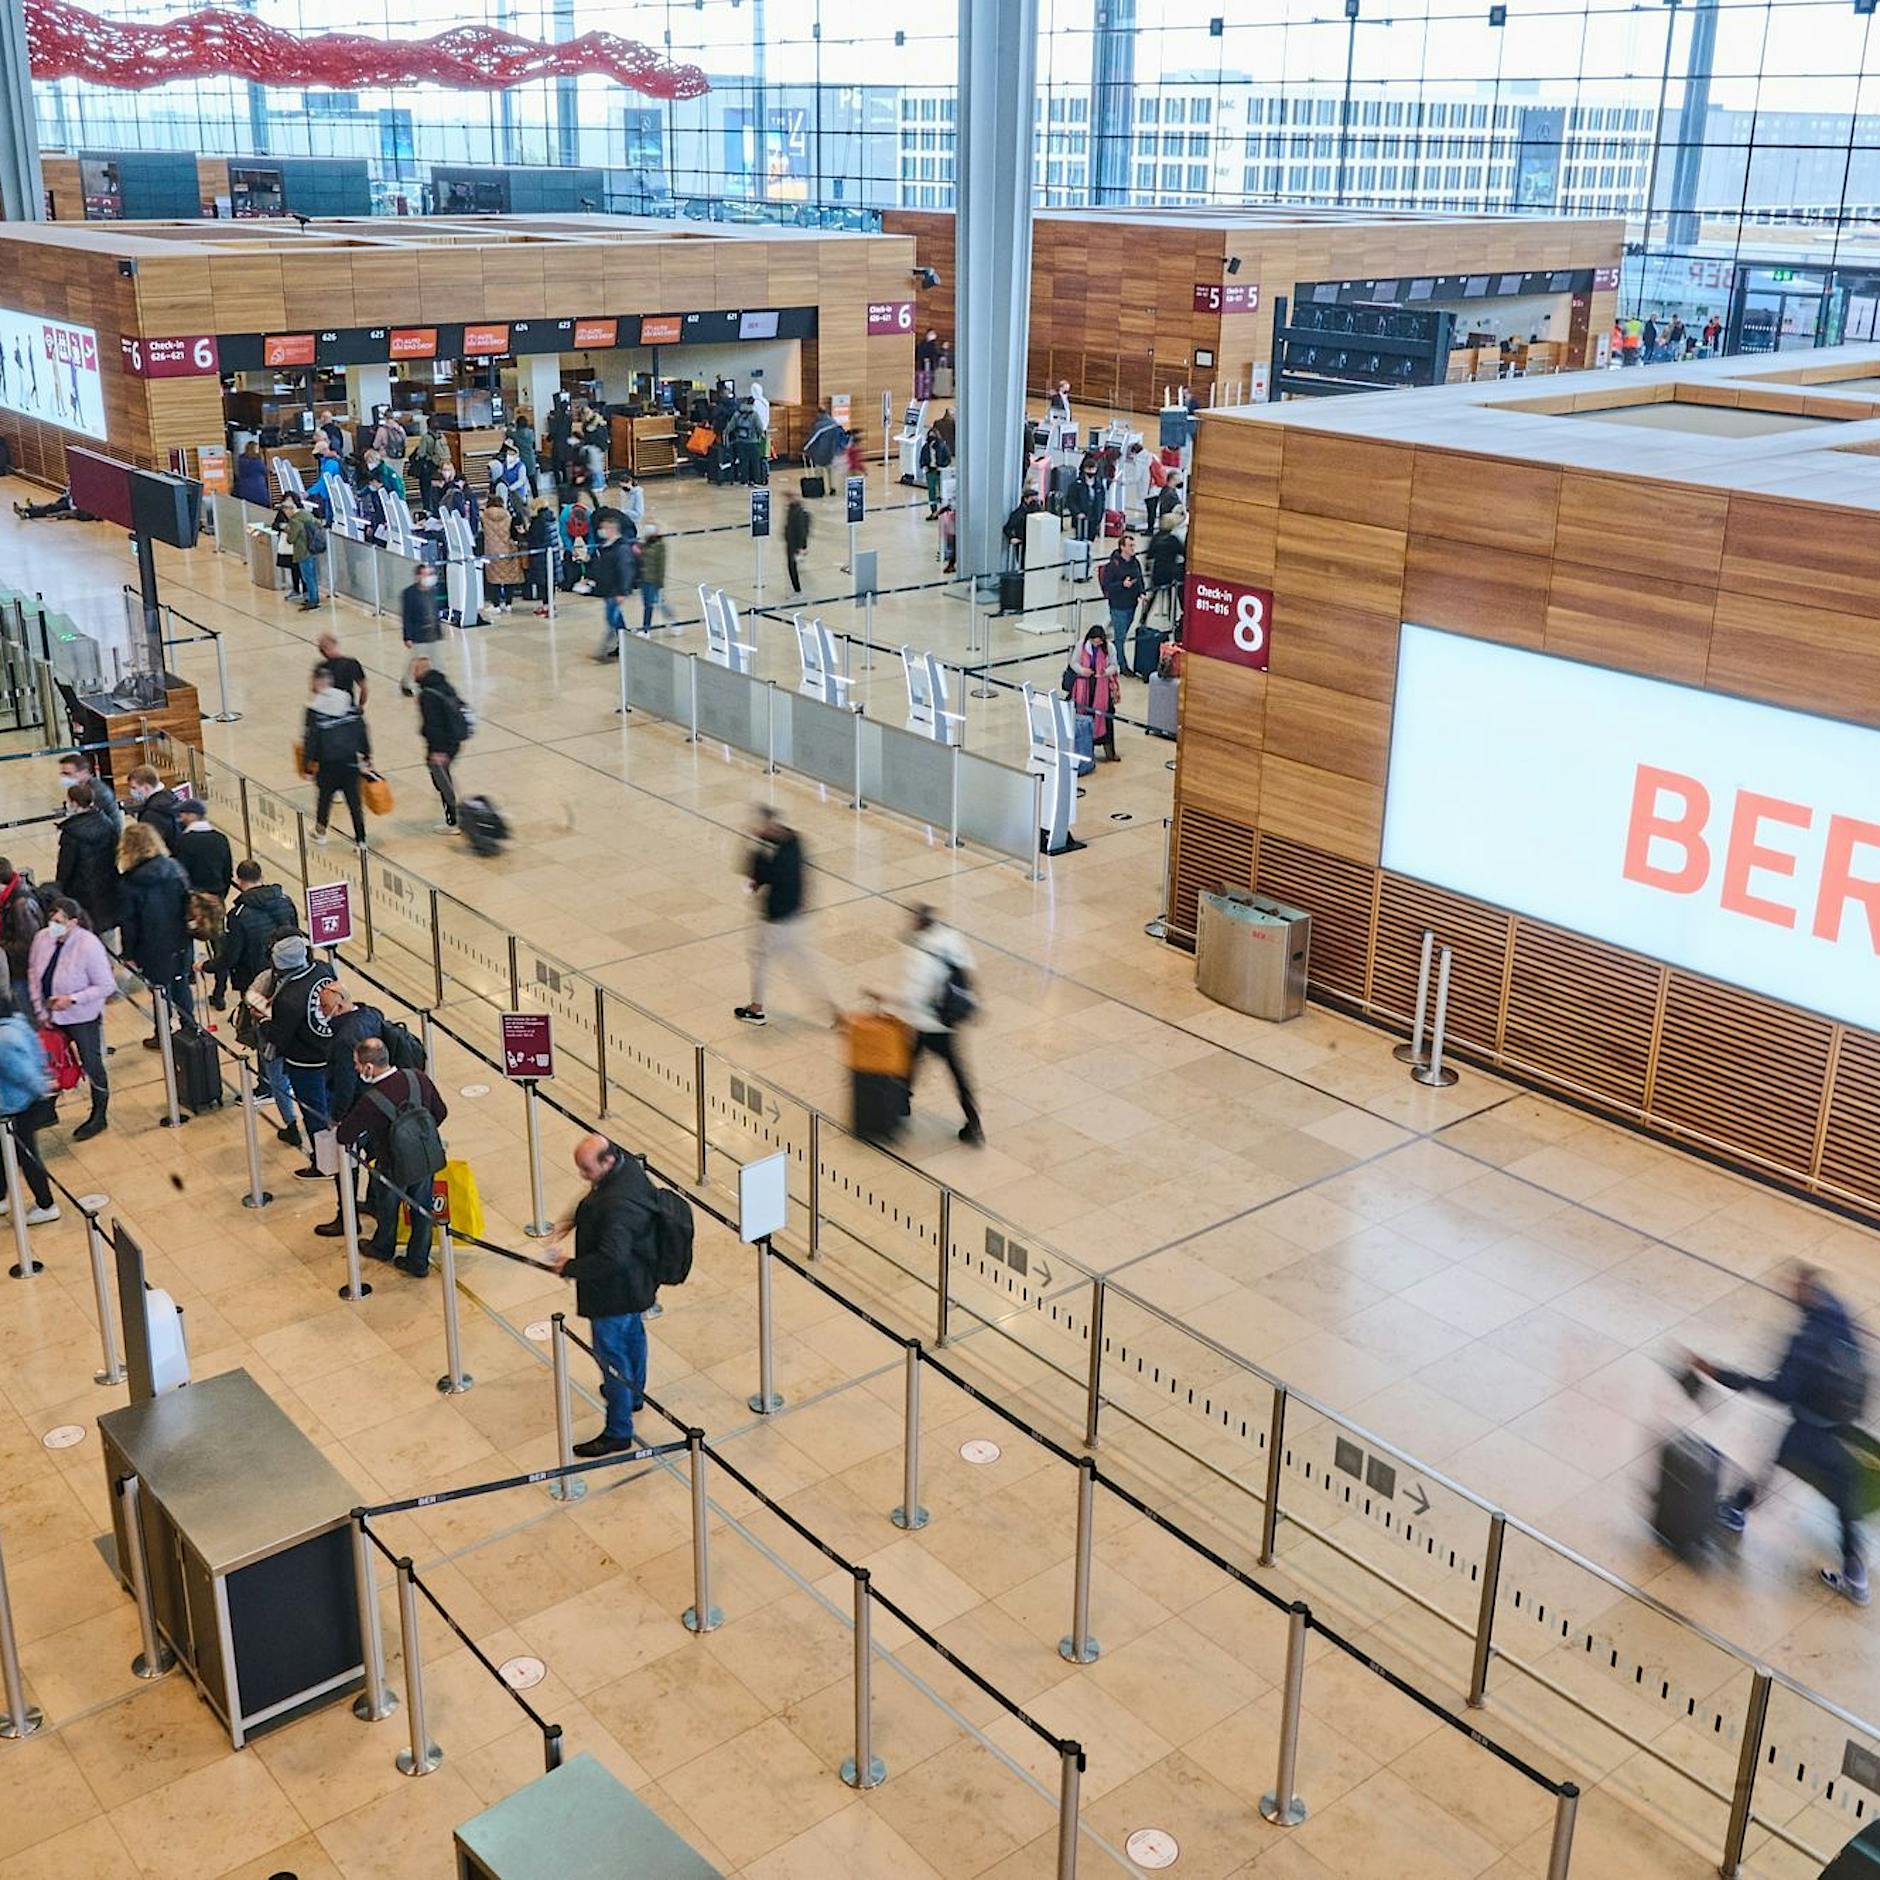 Billigflüge auf Langstrecke ab BER: Bald gibt es Berlin–New York ab 160 Euro